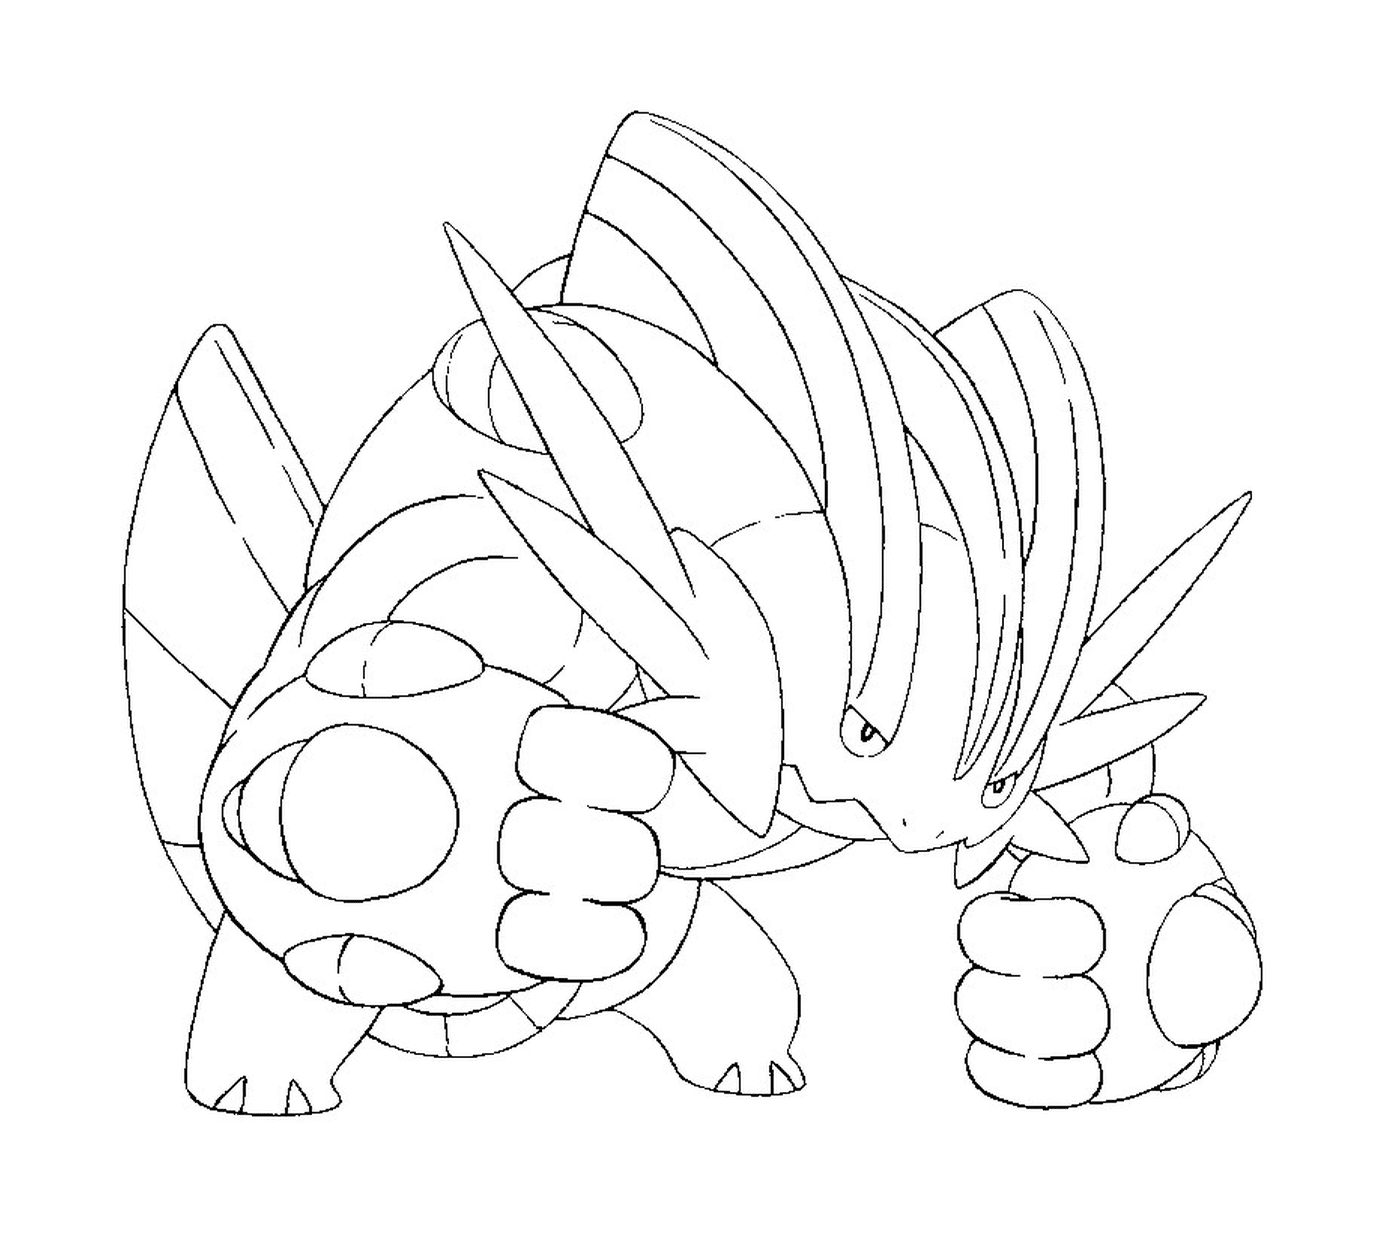   Laggron, un Pokémon amphibie 